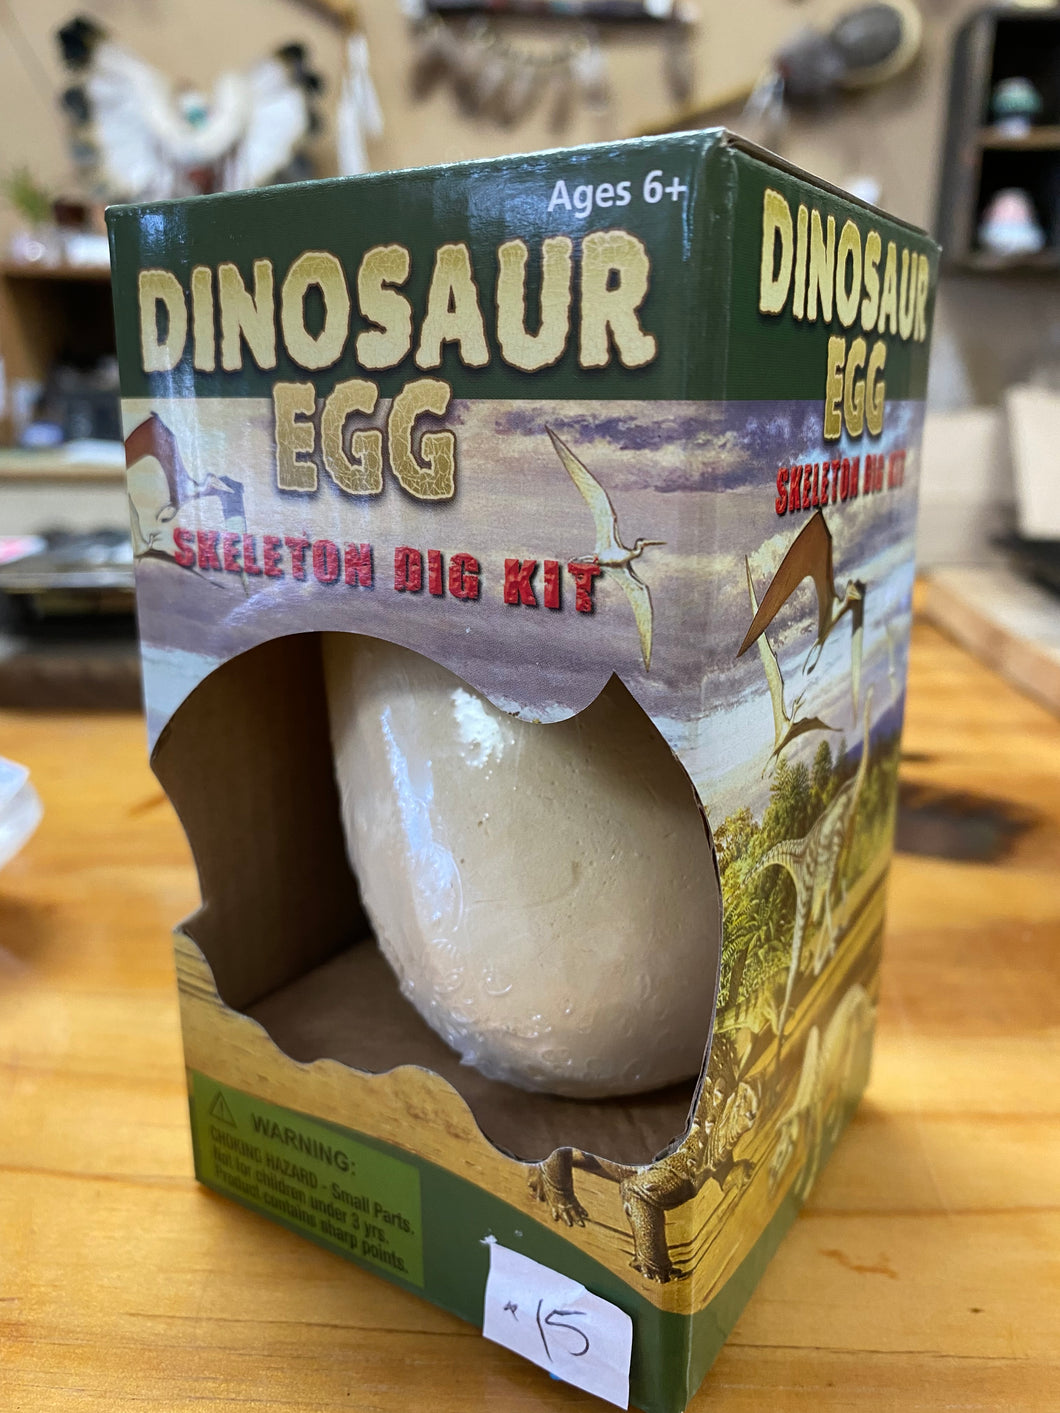 Dinosaur Egg Skeleton Dig Kit